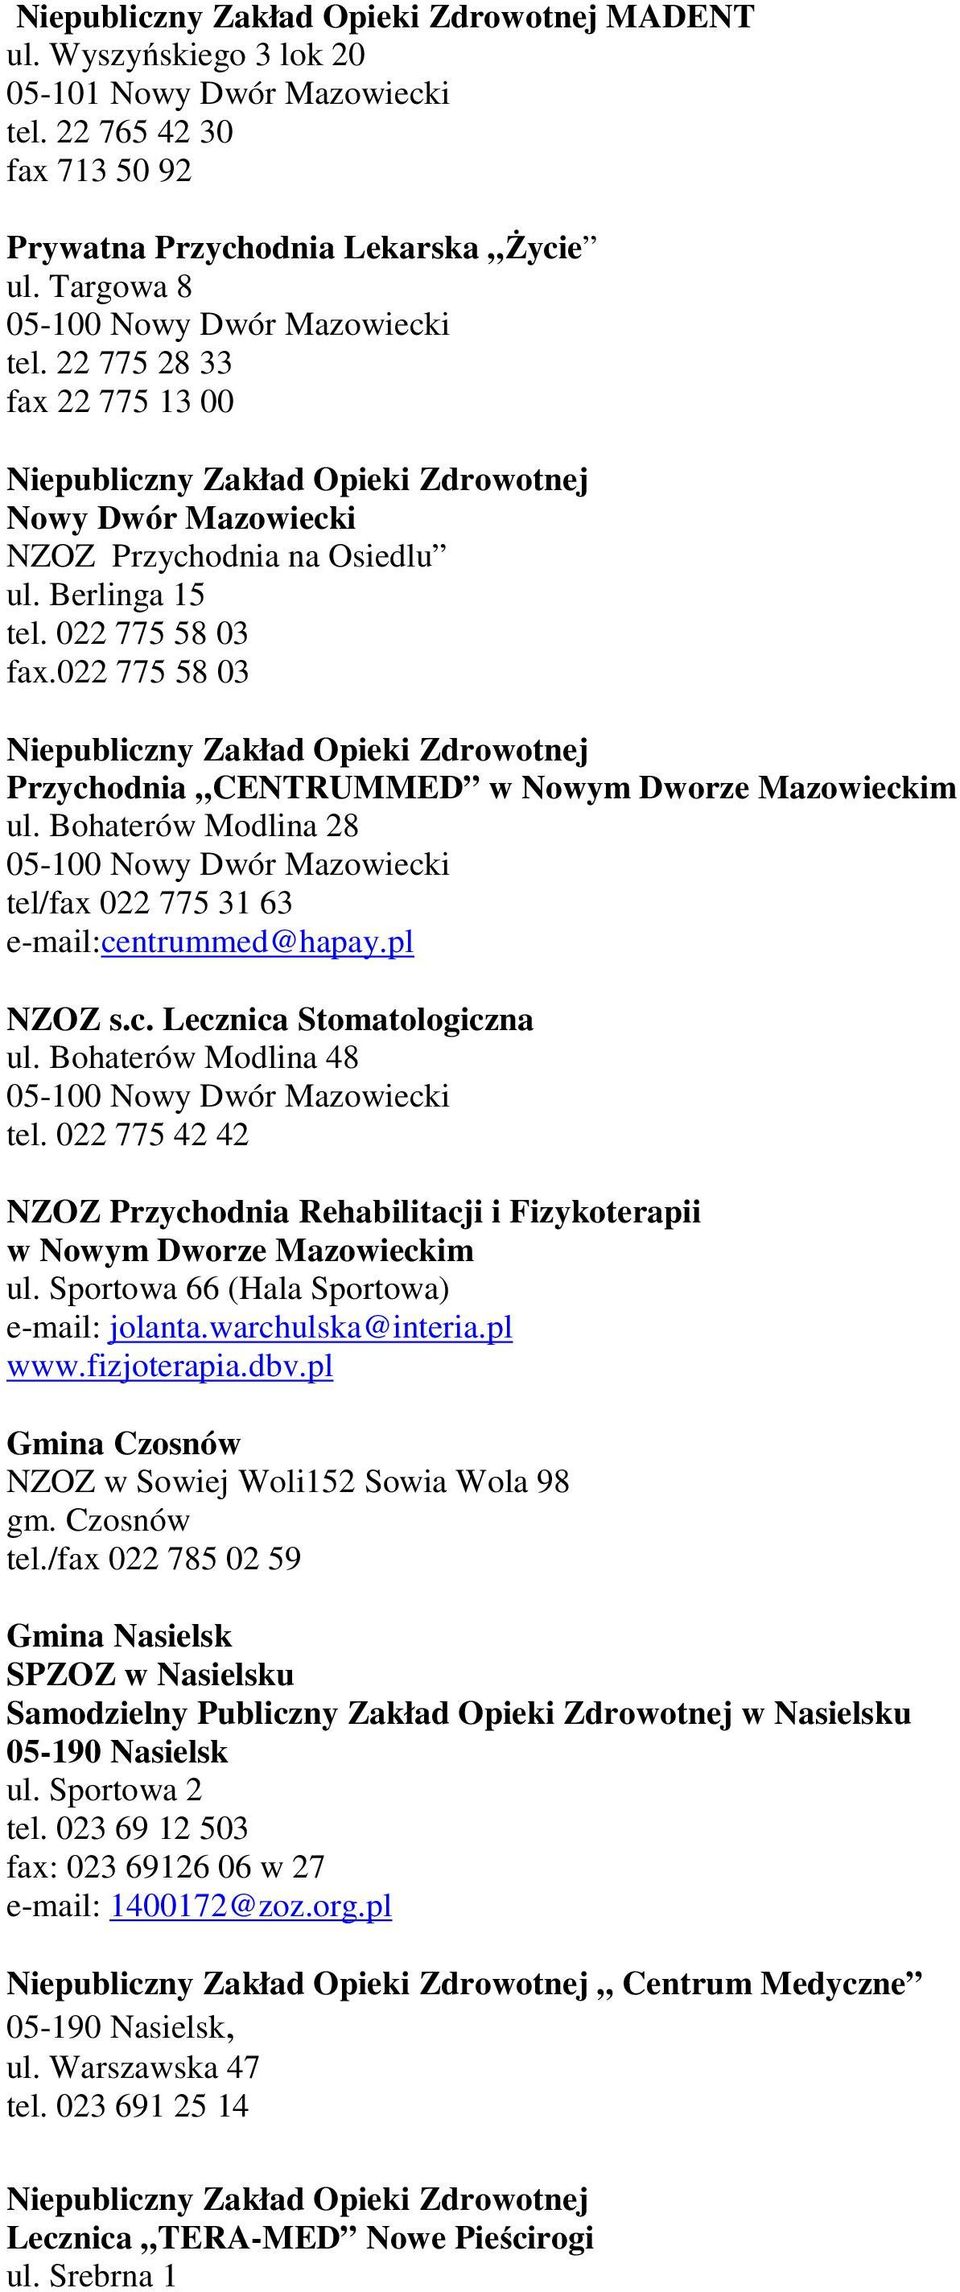 Bohaterów Modlina 28 tel/fax 022 775 31 63 e-mail:centrummed@hapay.pl NZOZ s.c. Lecznica Stomatologiczna ul. Bohaterów Modlina 48 tel.